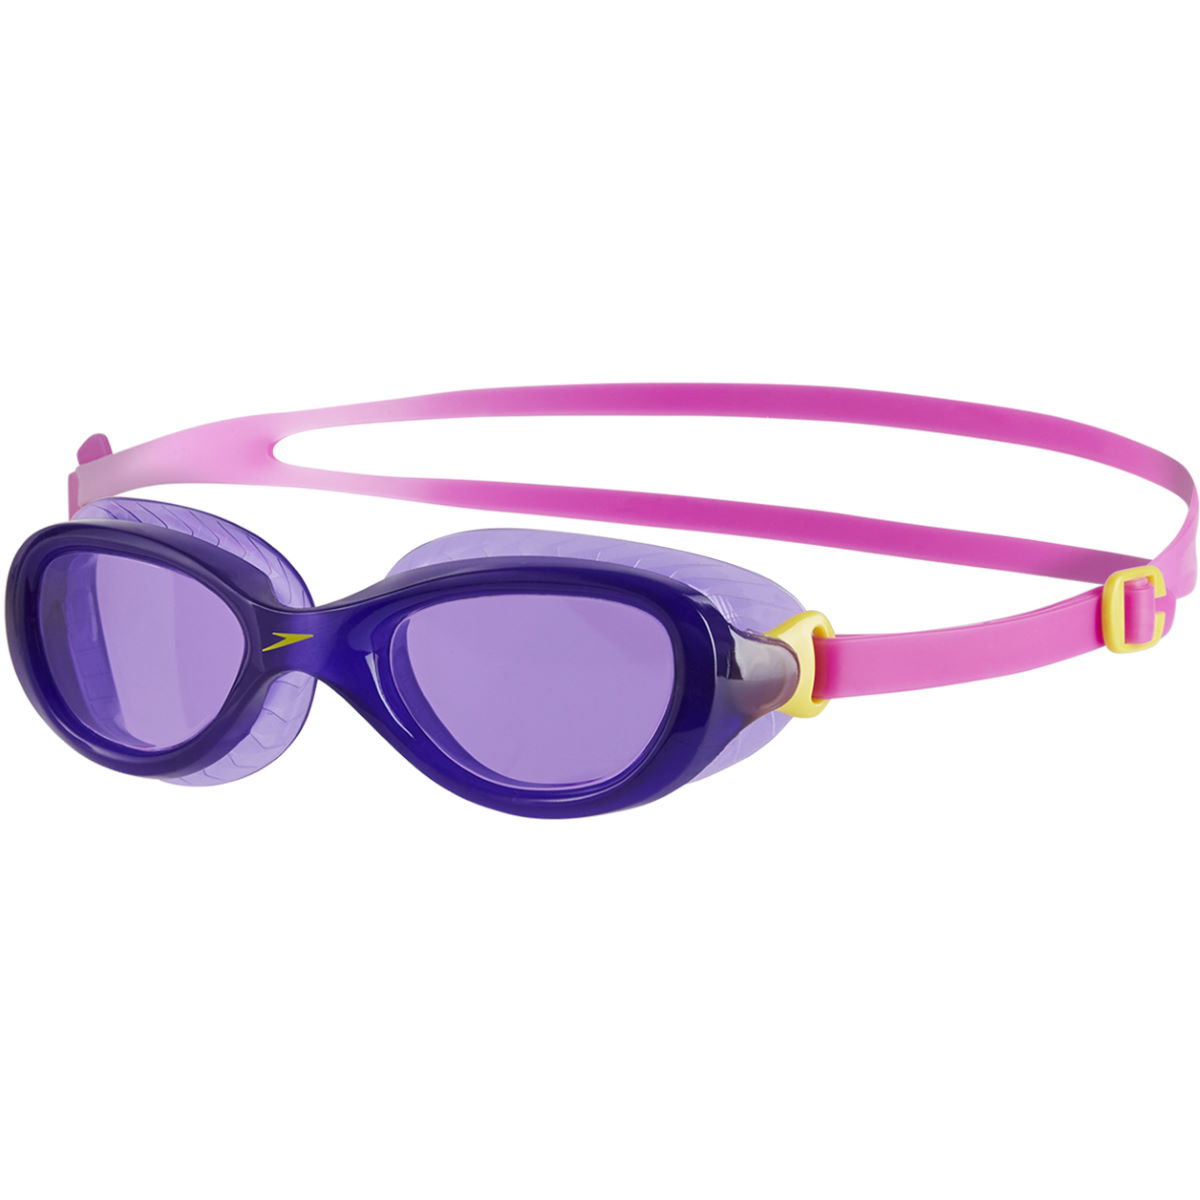 Gafas de natación Speedo Futura Classic Junior para niños - Gafas